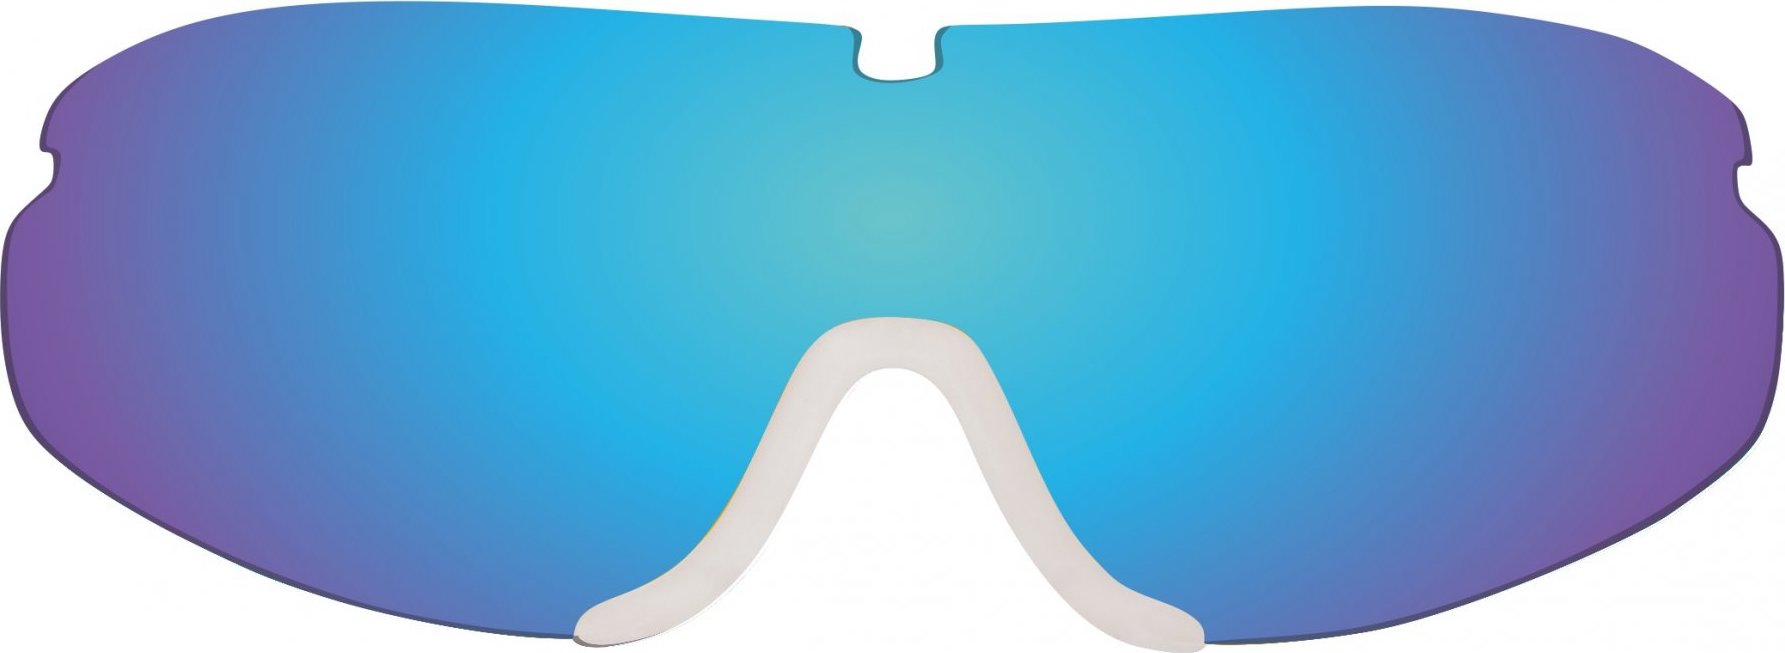 Náhradní čočka k lyžařským brýlím CROSS HTG34